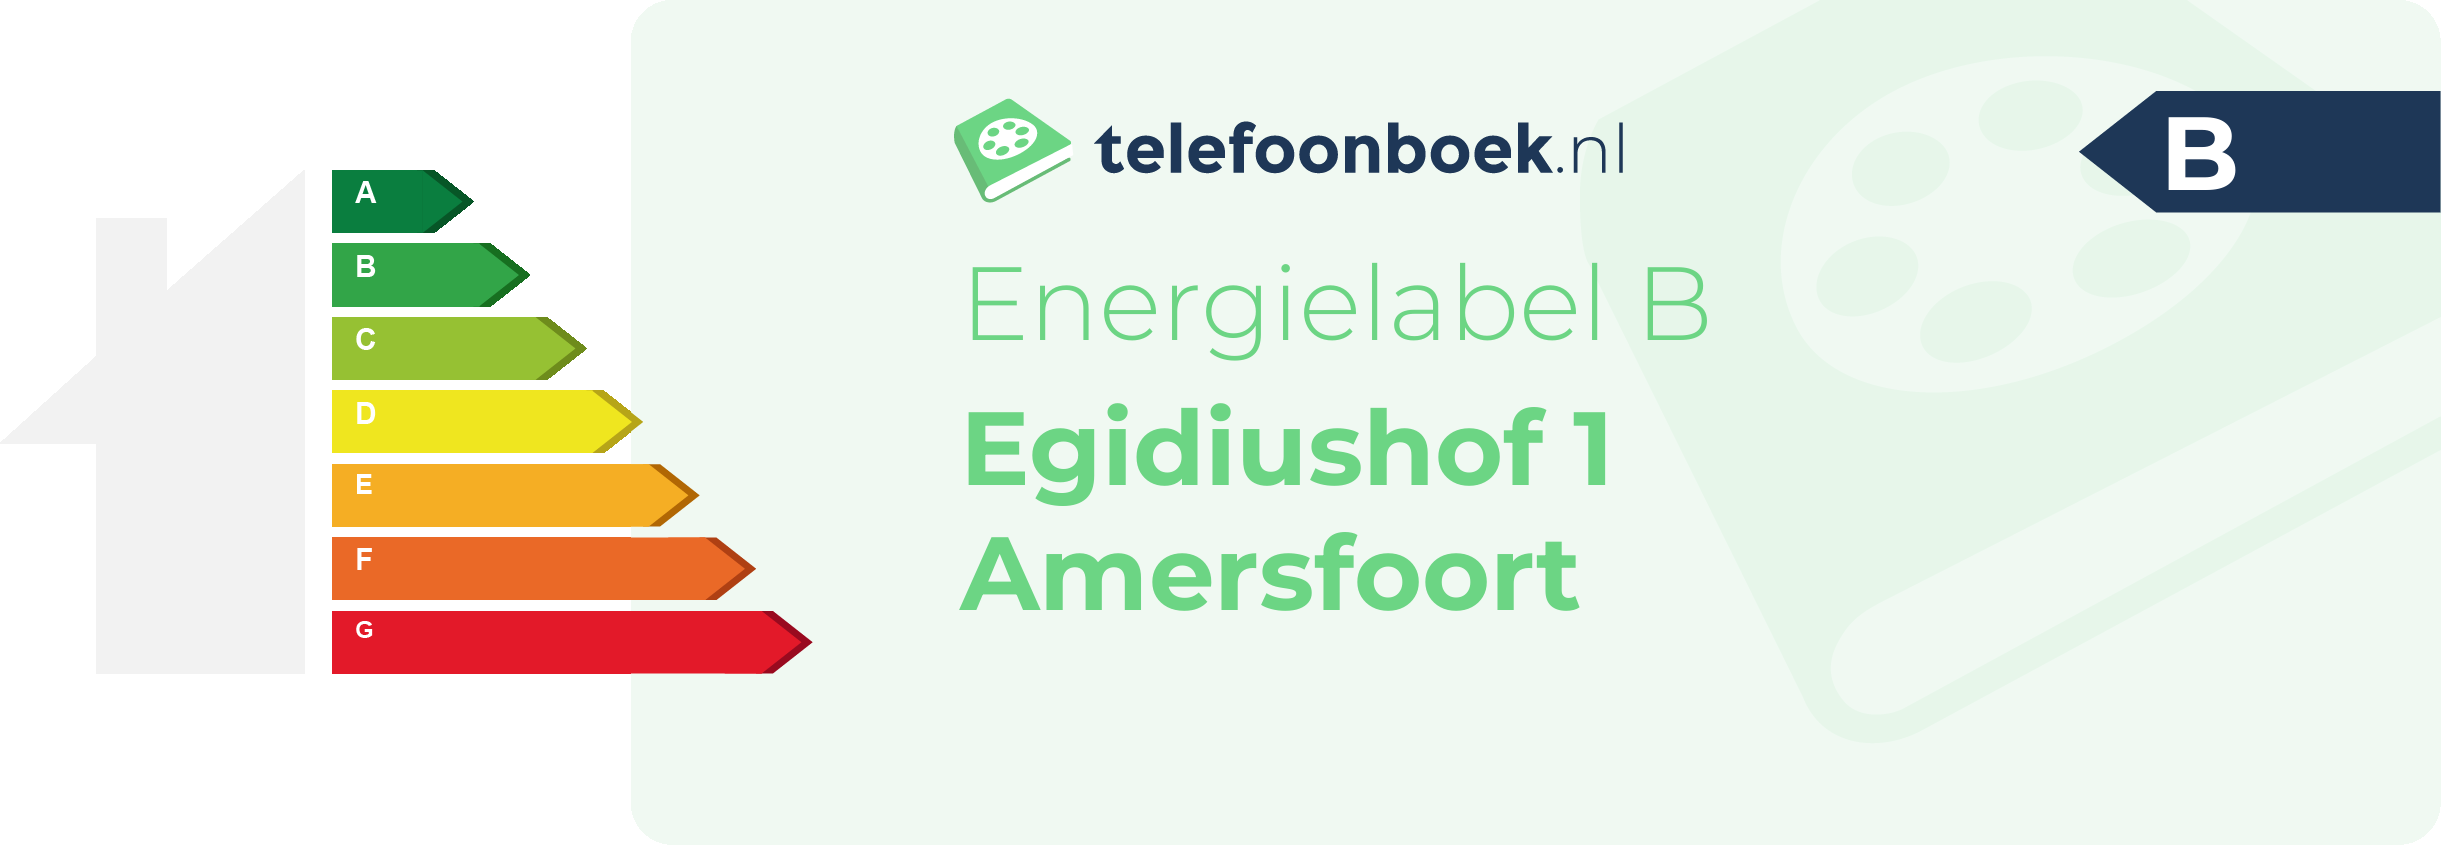 Energielabel Egidiushof 1 Amersfoort